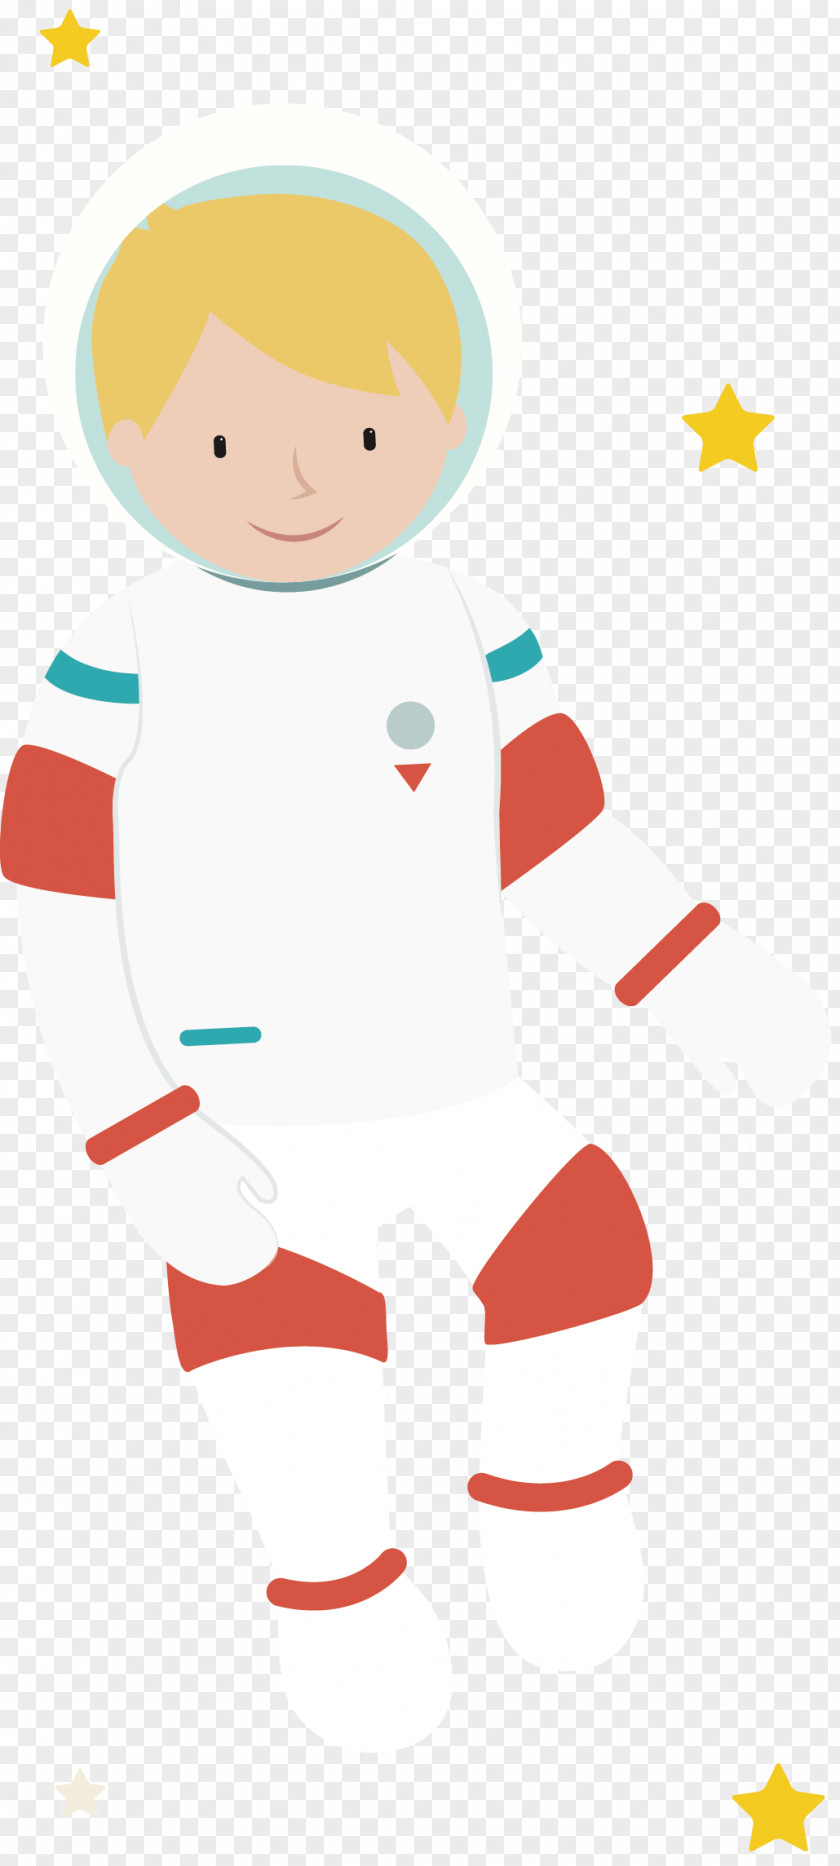 Astronaut Spacecraft PNG